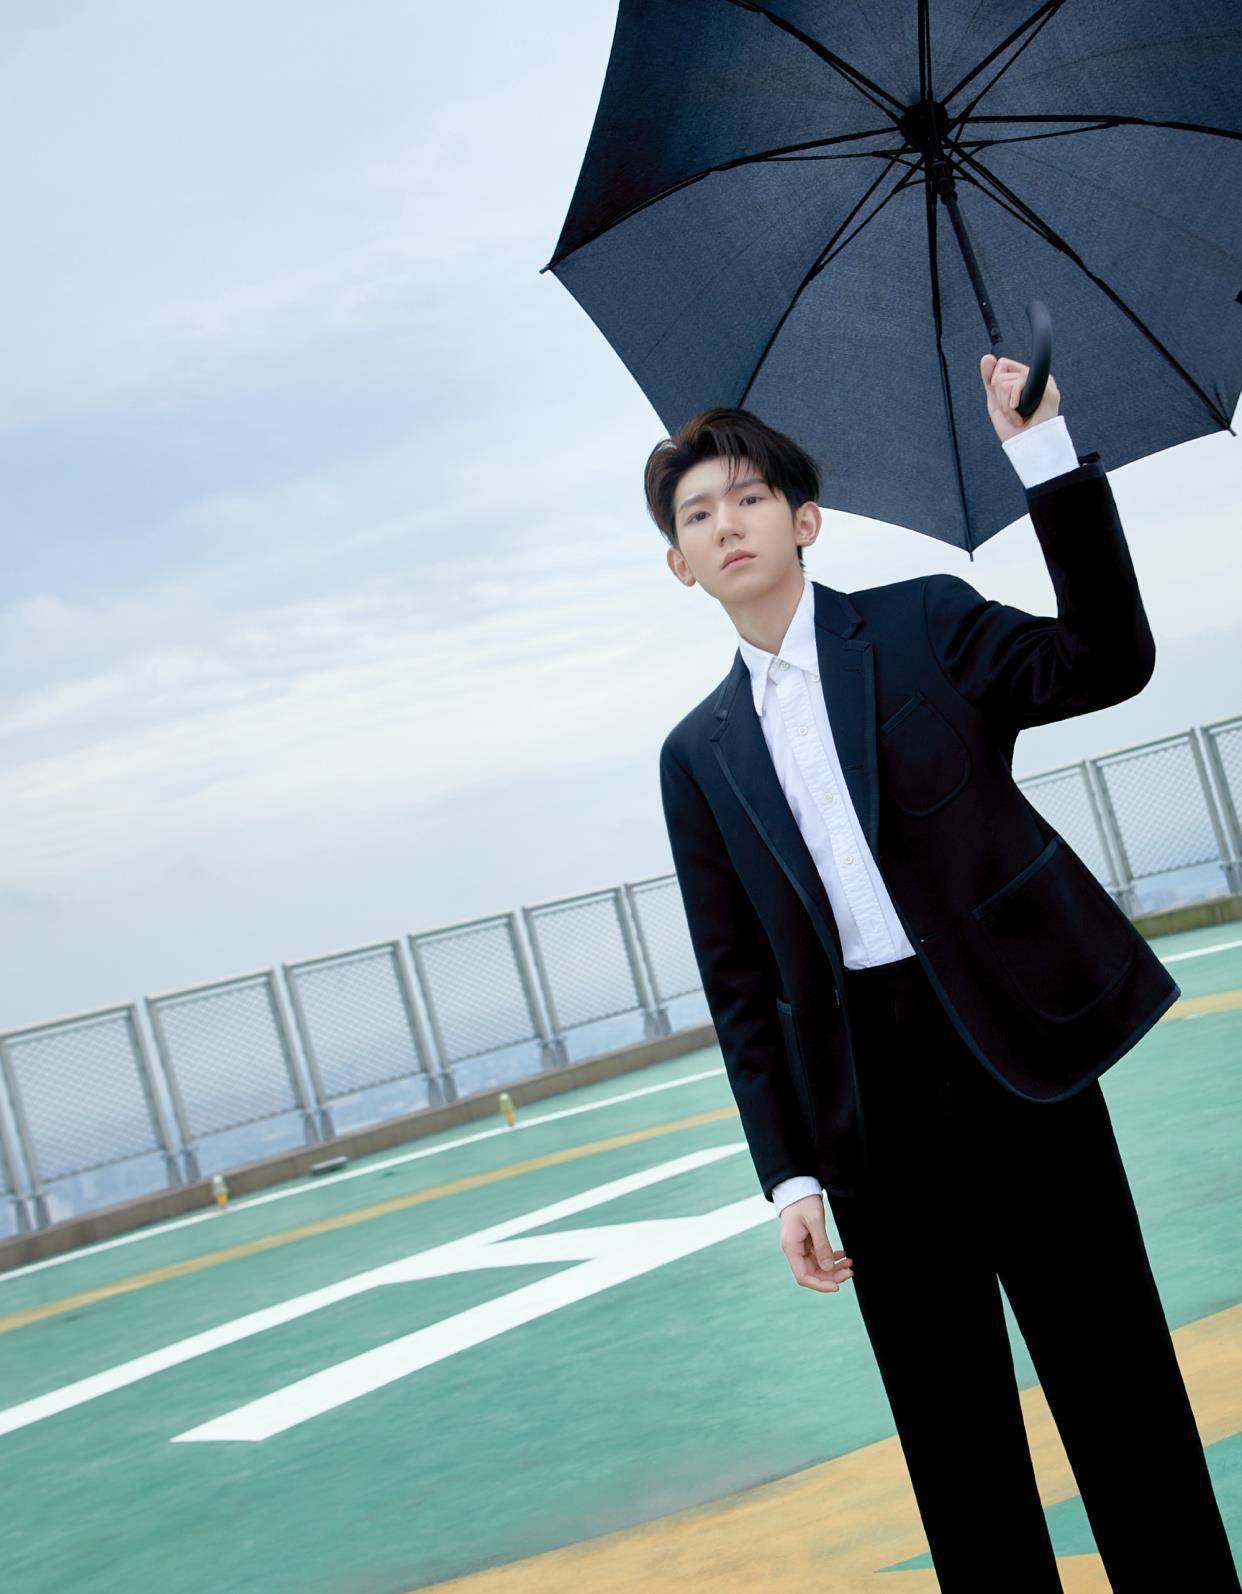 王源天台写真,黑色西装白衬衫,手撑雨伞氛围感十足!